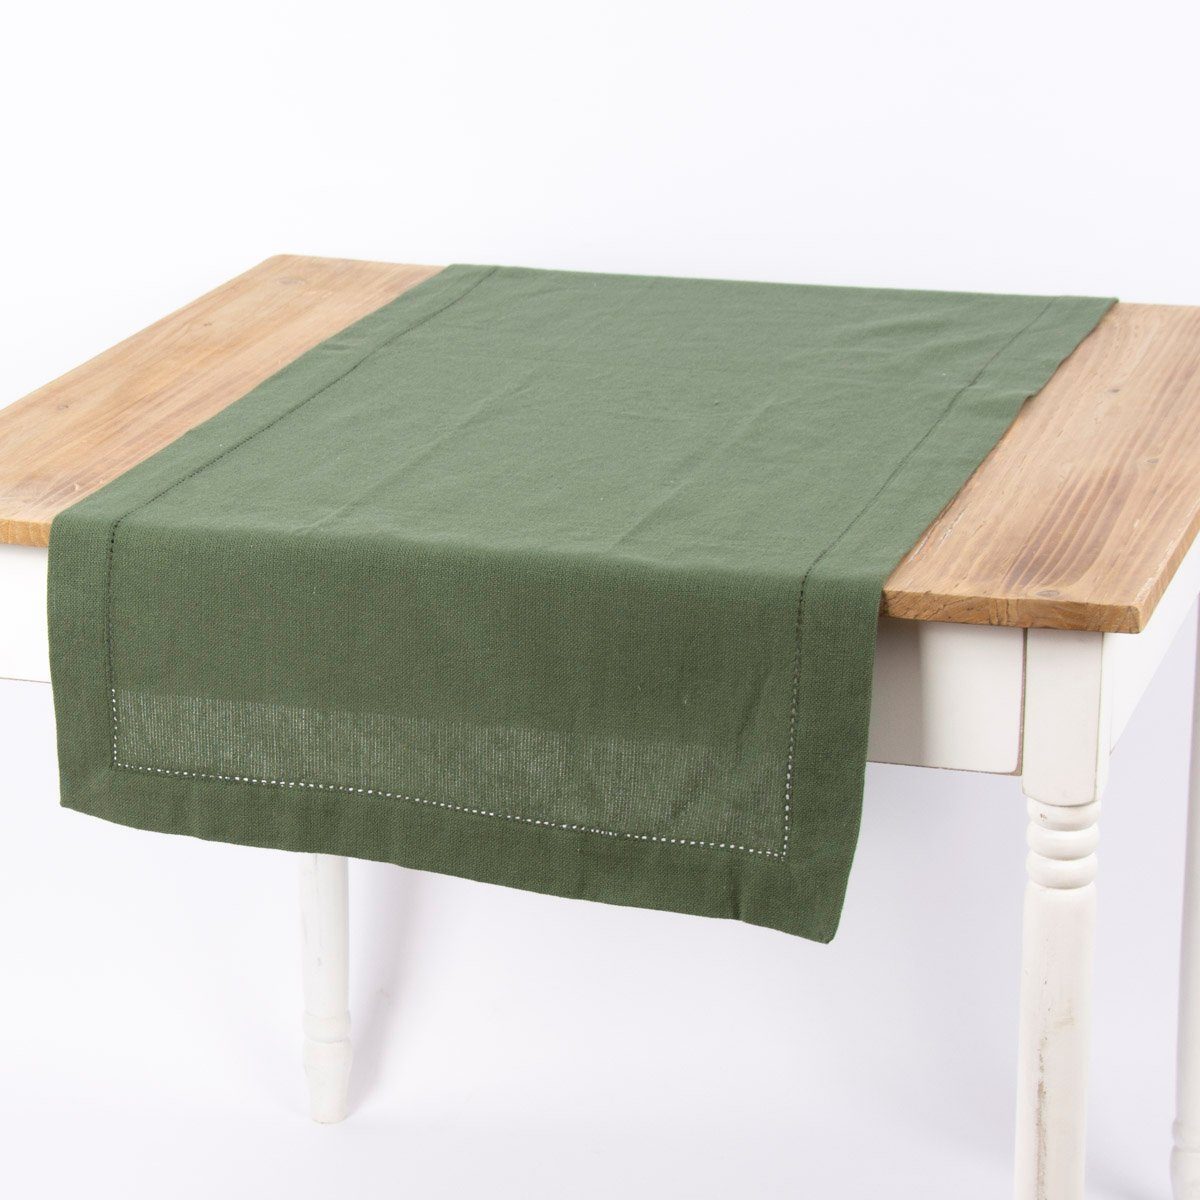 SCHÖNER LEBEN. Tischläufer Linen & More Tischläufer Indi einfarbig army grün 50x140cm